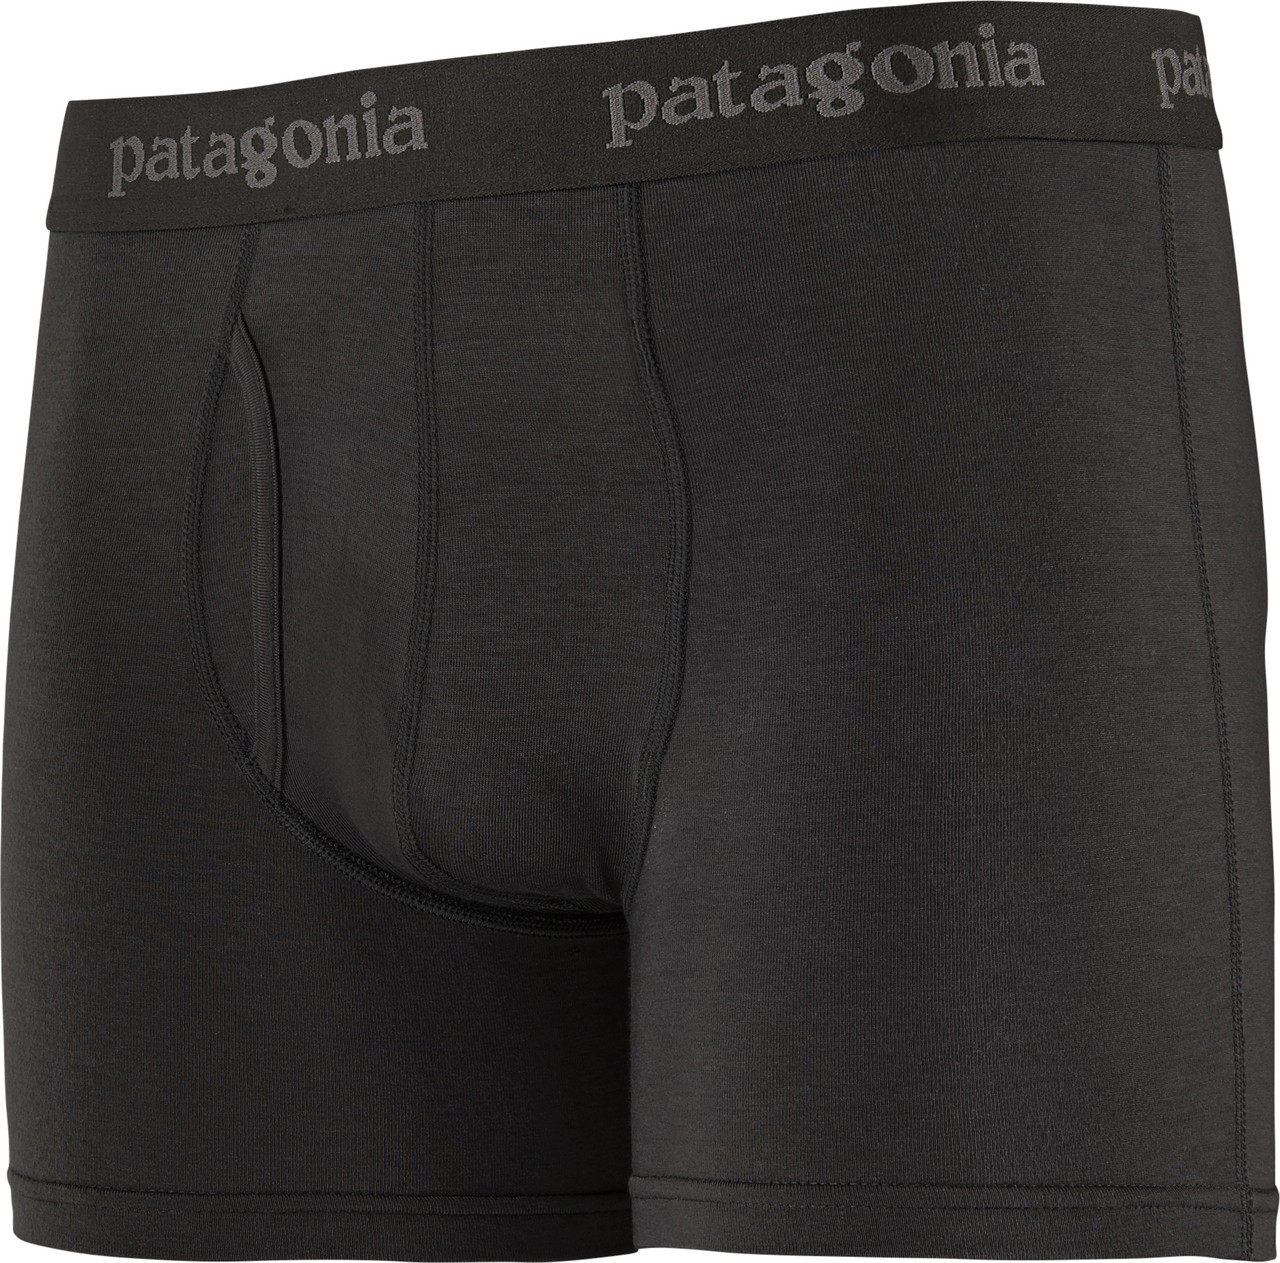 Patagonia Essential Boxer 3 Inch Briefs - Men's | MEC